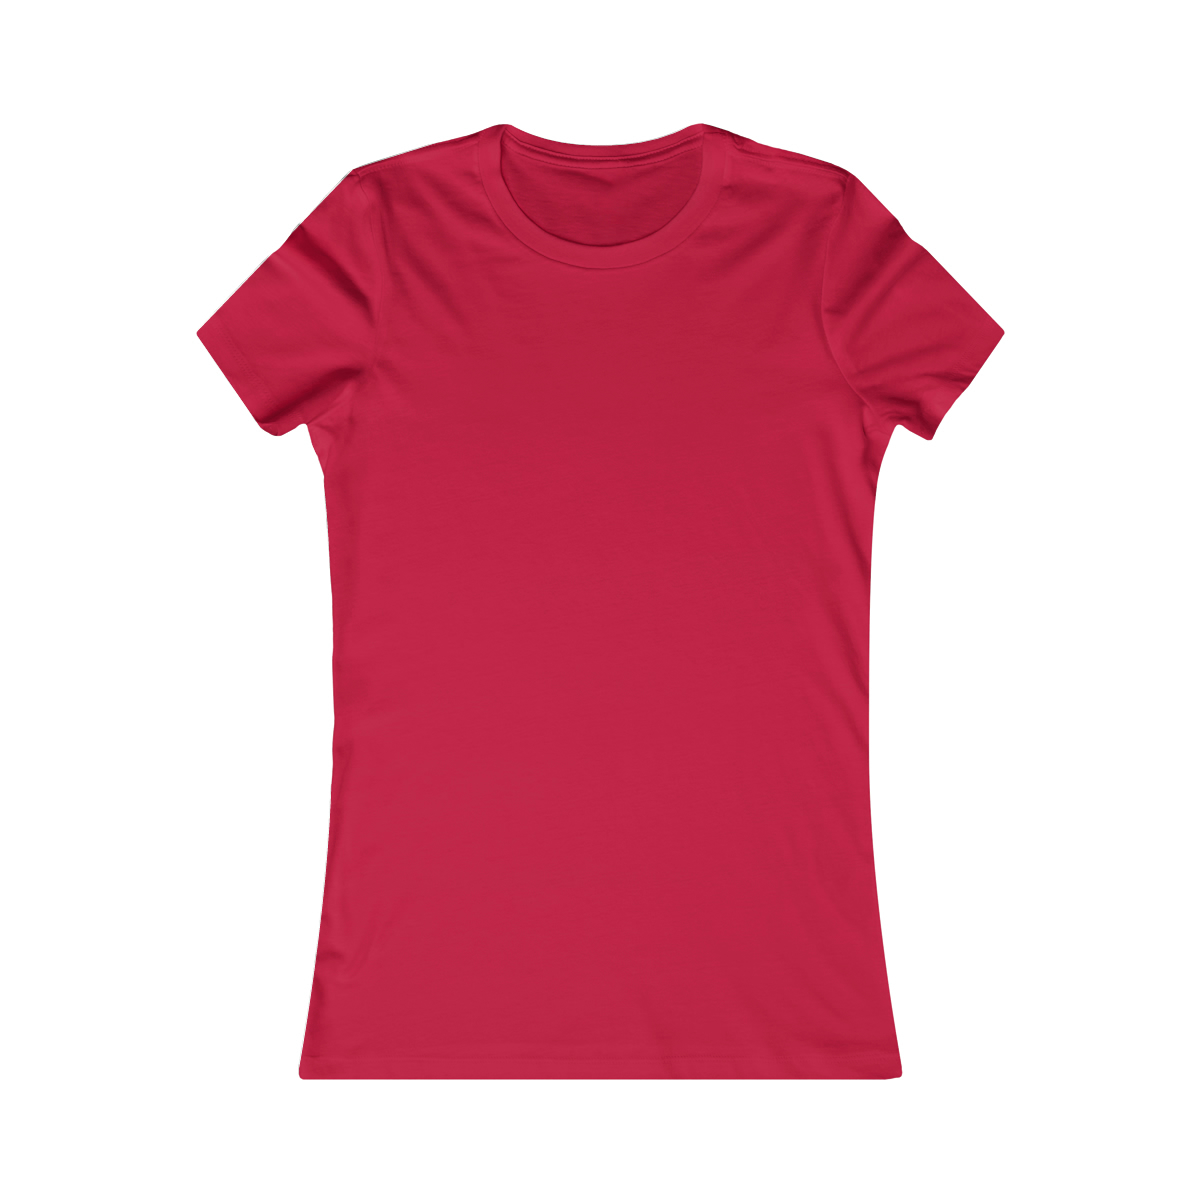 T-shirt Femme Coupe Ajustée – Bella Canvas 6004